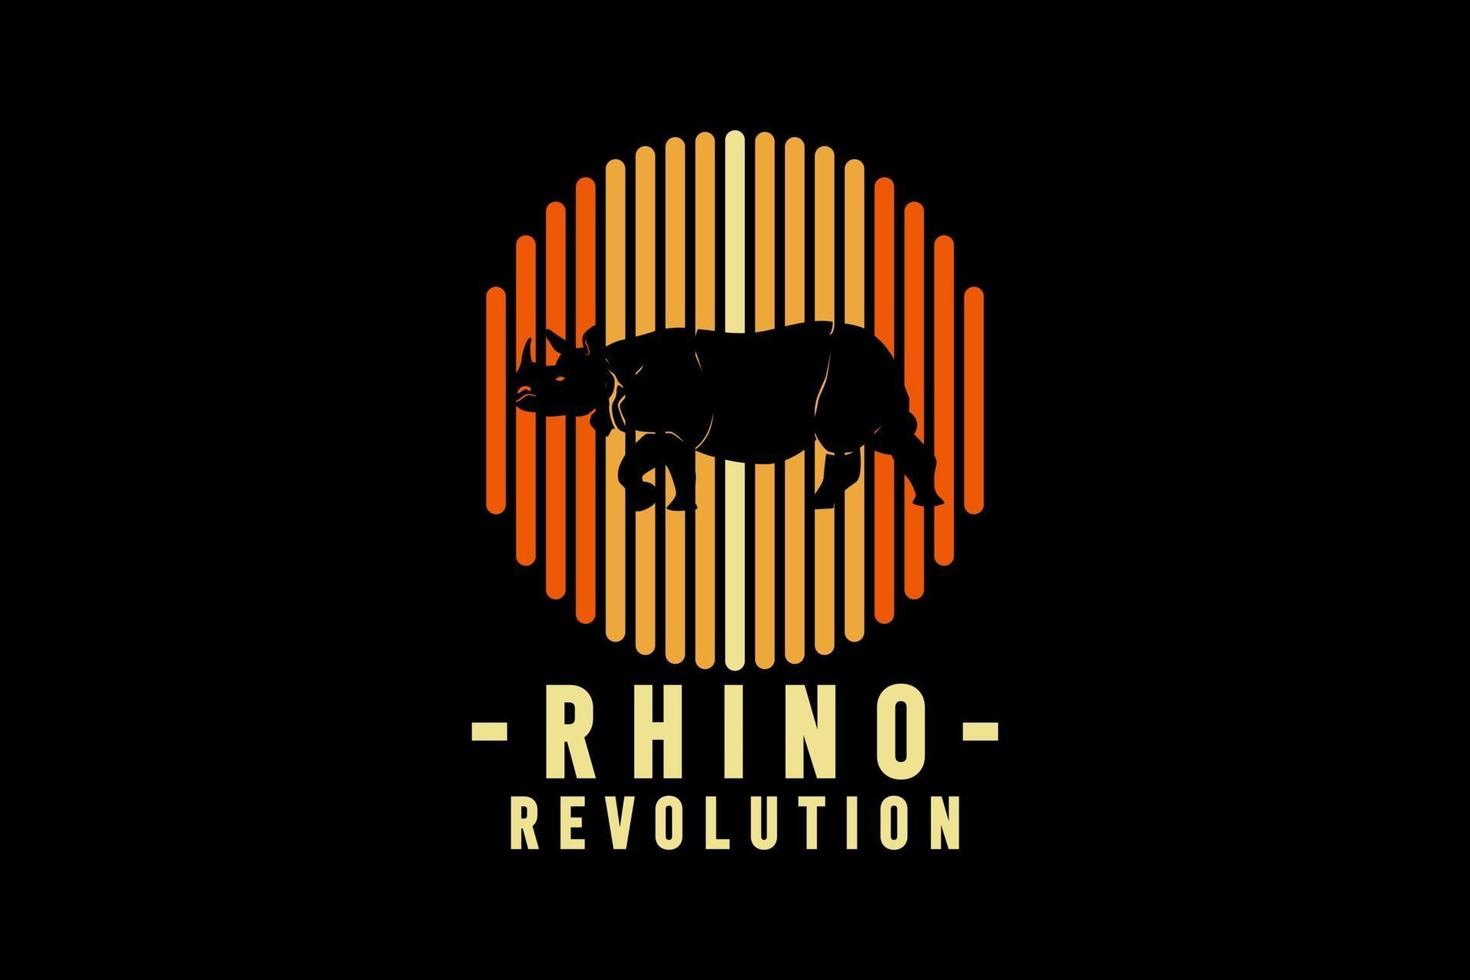 revolución del rinoceronte, ilustración de dibujo a mano de estilo retro vintage vector